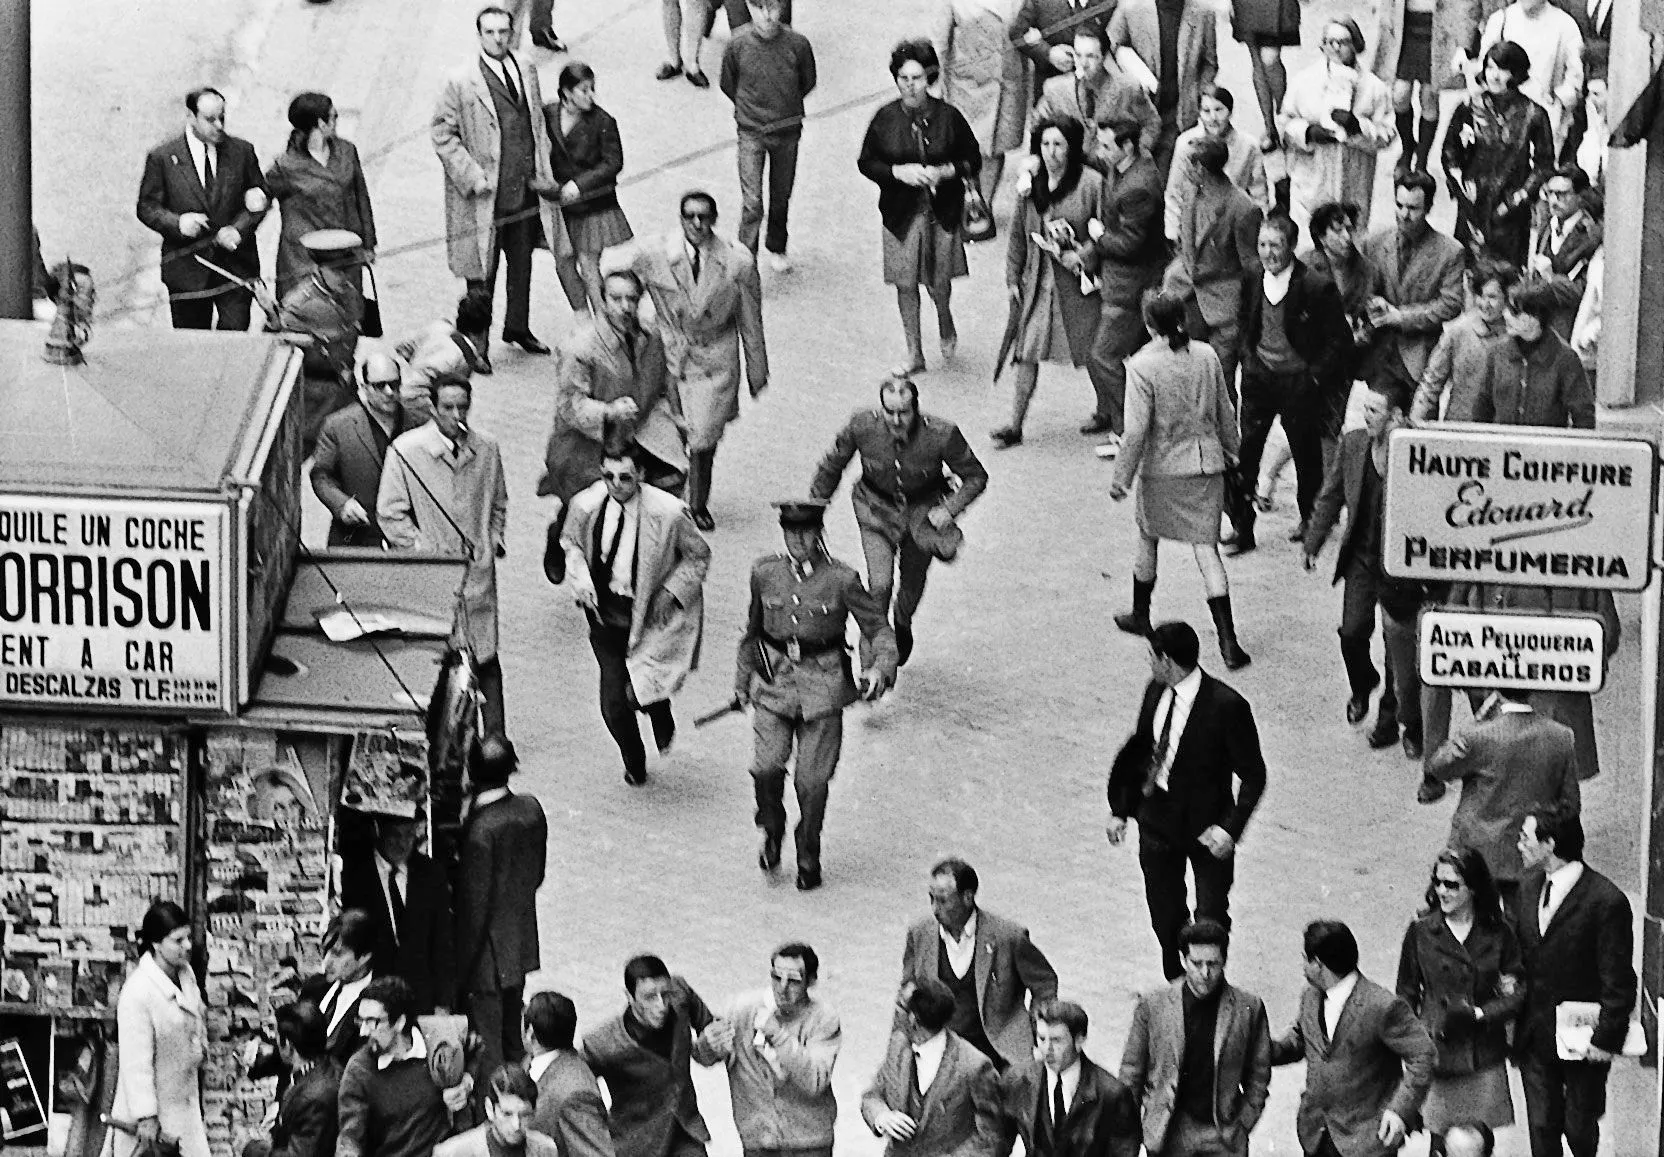 Agents de la policia armada persegueixen estudiants per la Gran Via de Madrid durant les jornades de lluita de Comissions Obreres, l’octubre del 1967